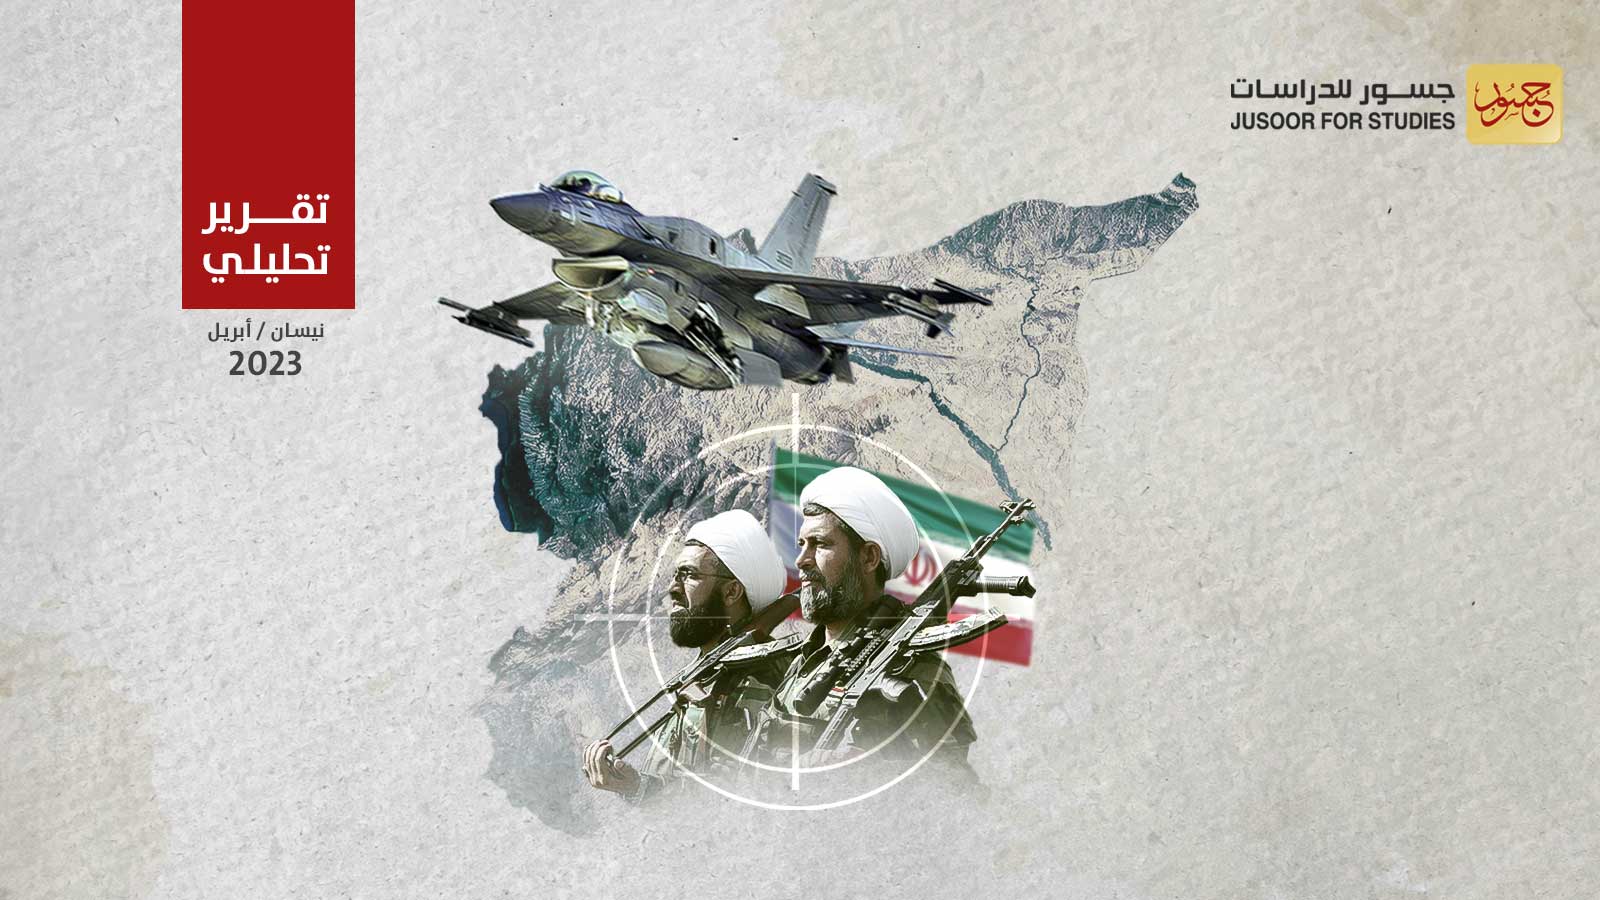 سيناريو عملية "إسرائيلية – أمريكية" محتملة ضدّ الميليشيات الإيرانية في سورية